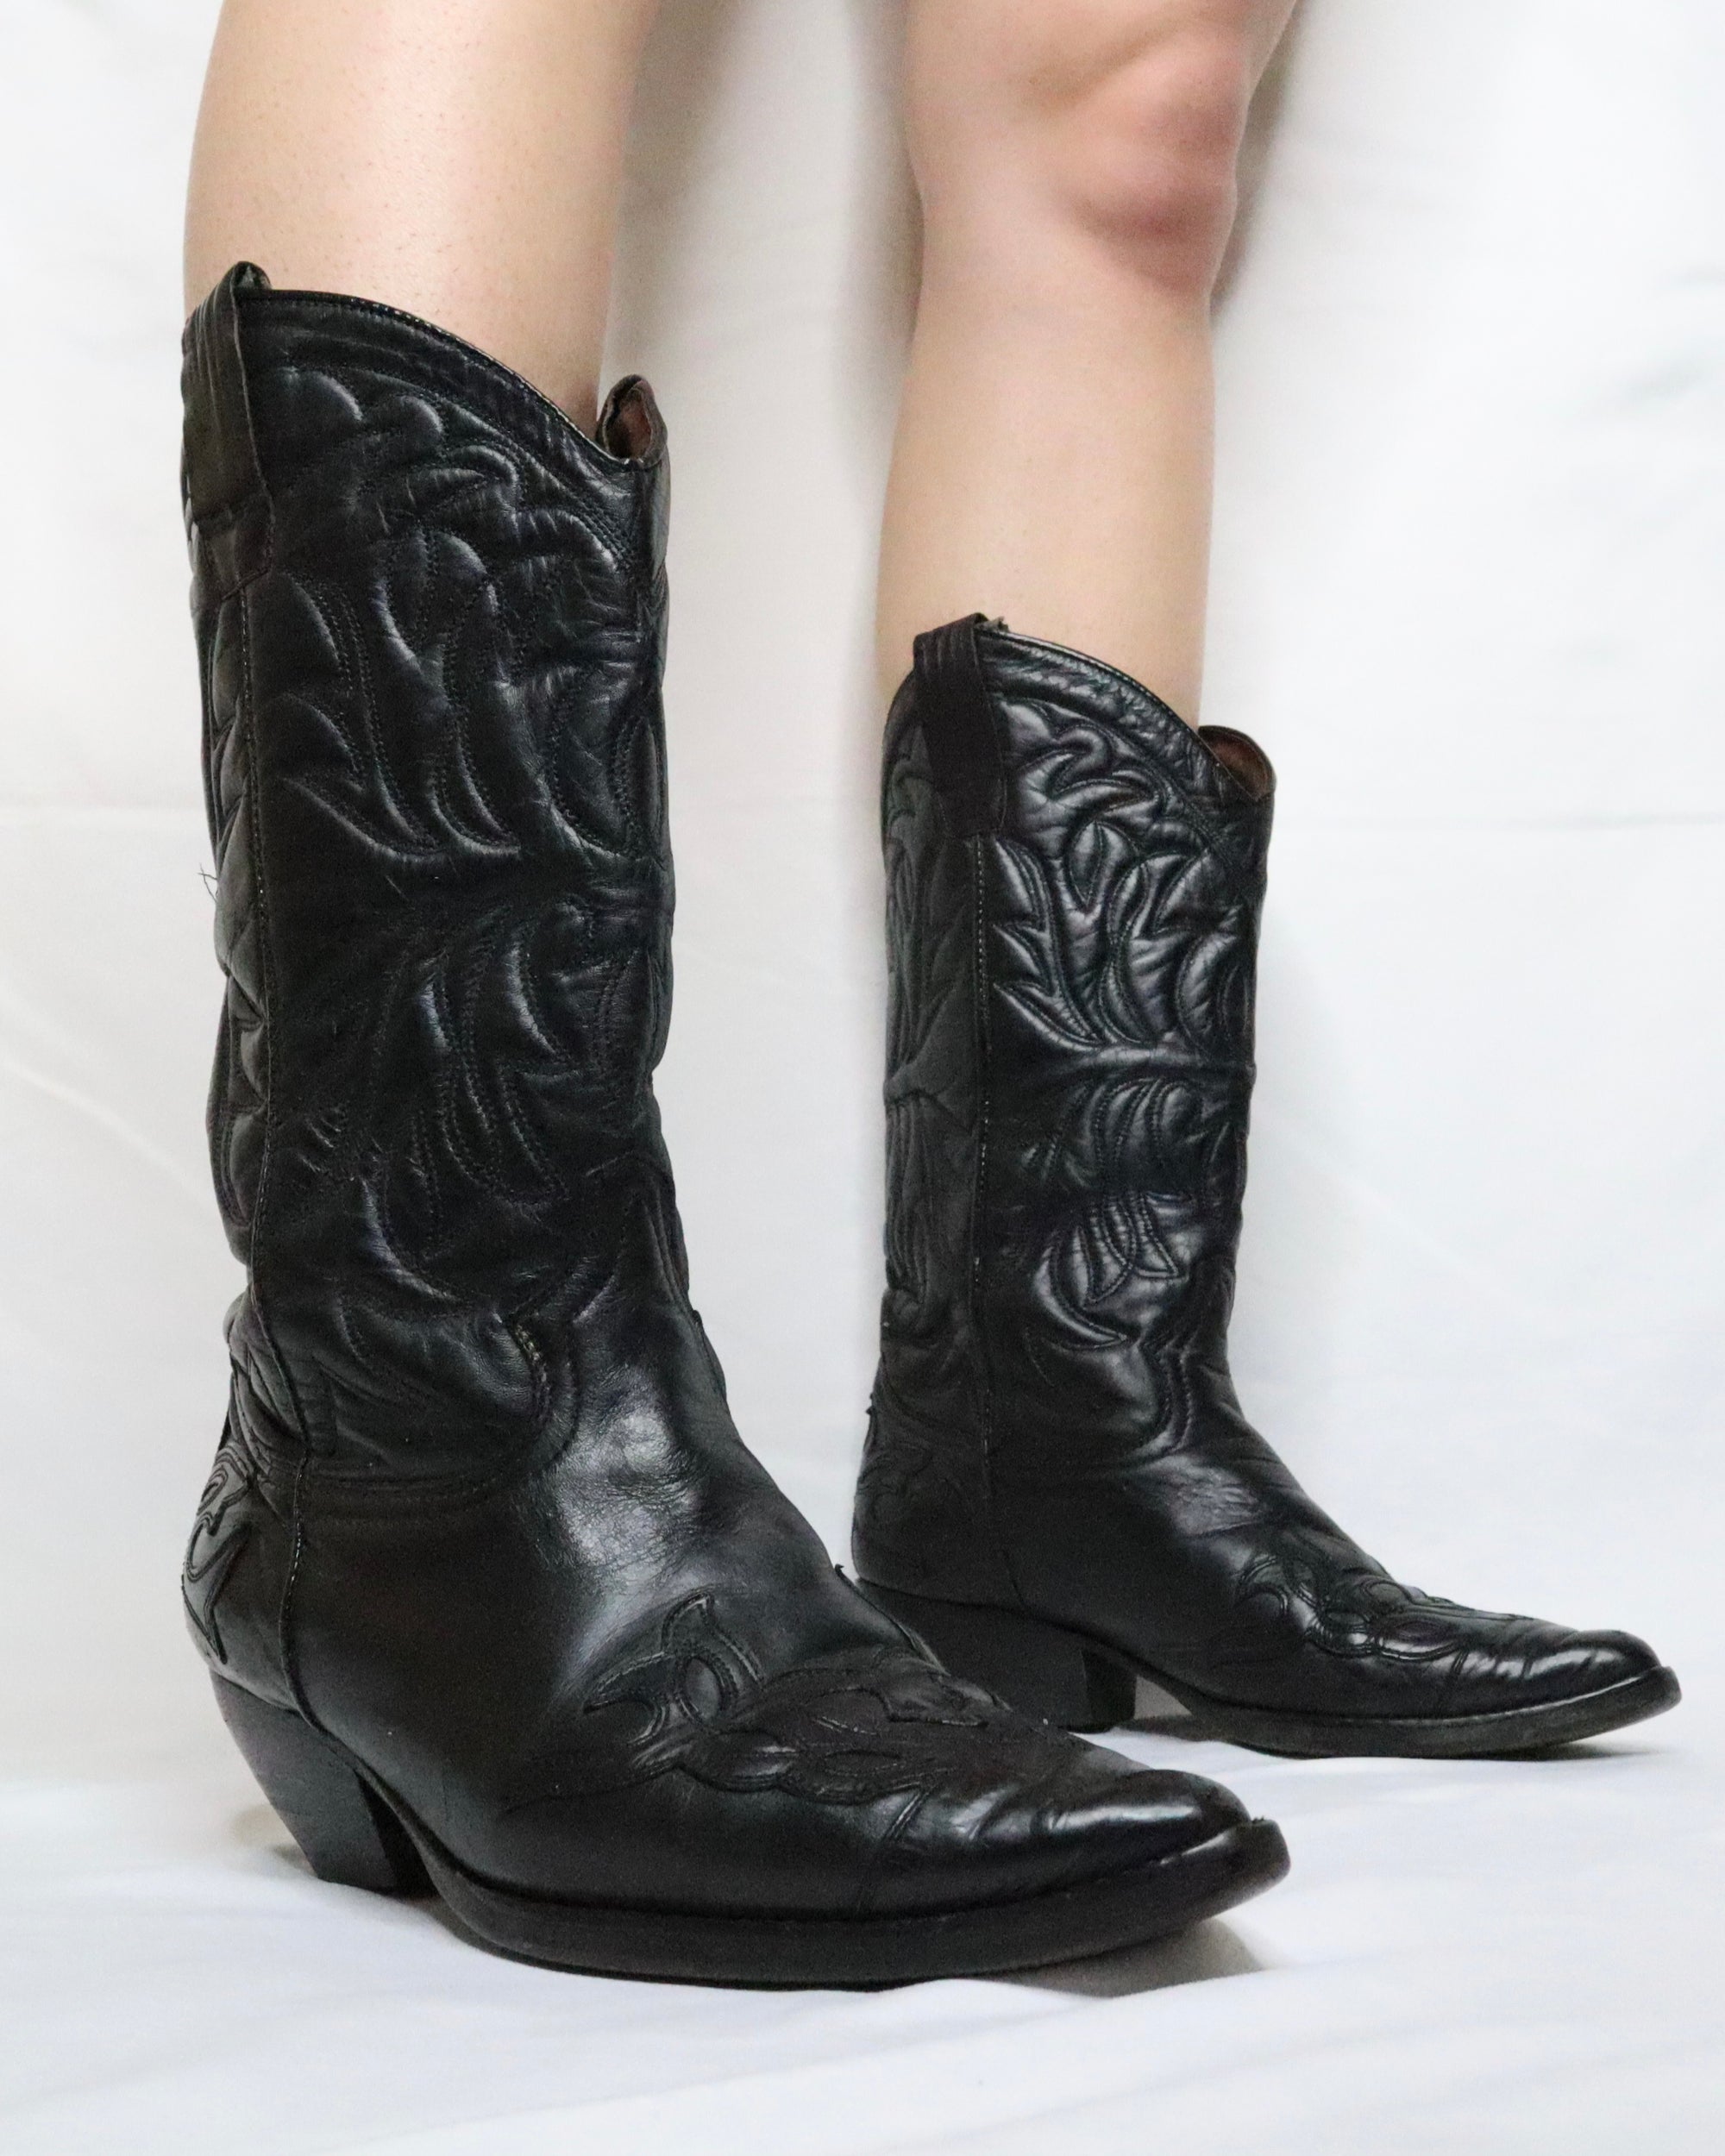 Black Cowboy Boots (6.5-7 US) 